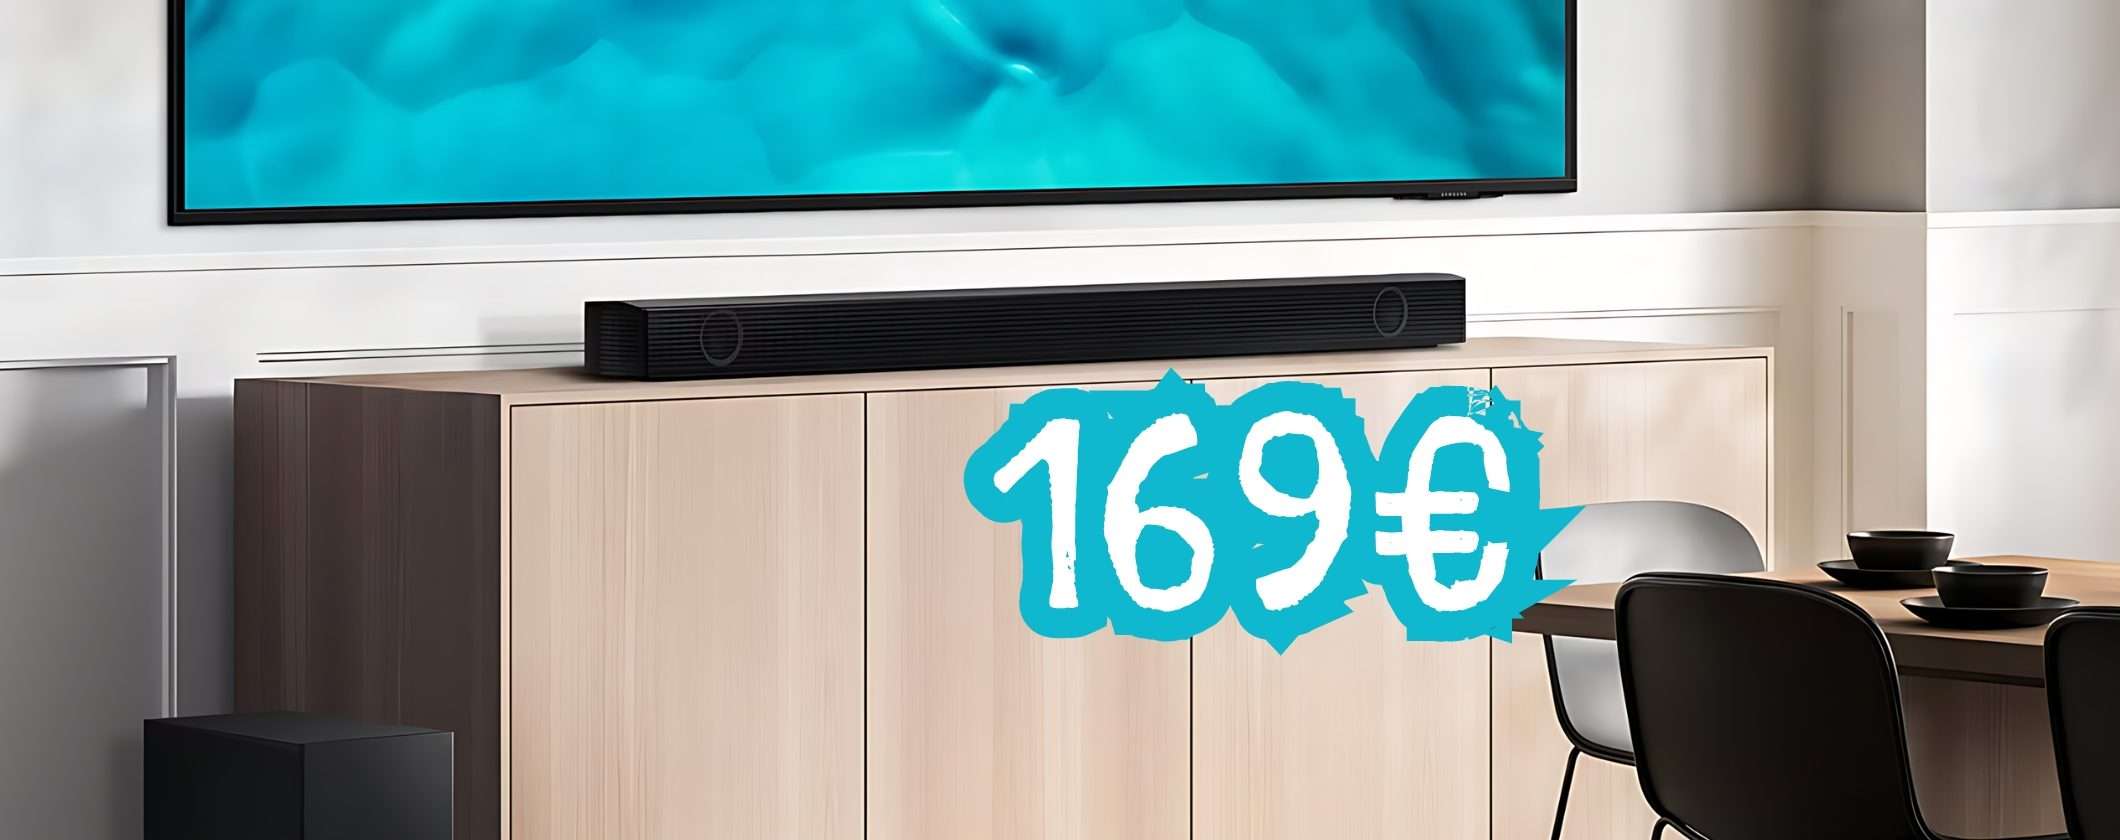 Soundbar Samsung a 169€ invece di 299€, solo su MediaWorld